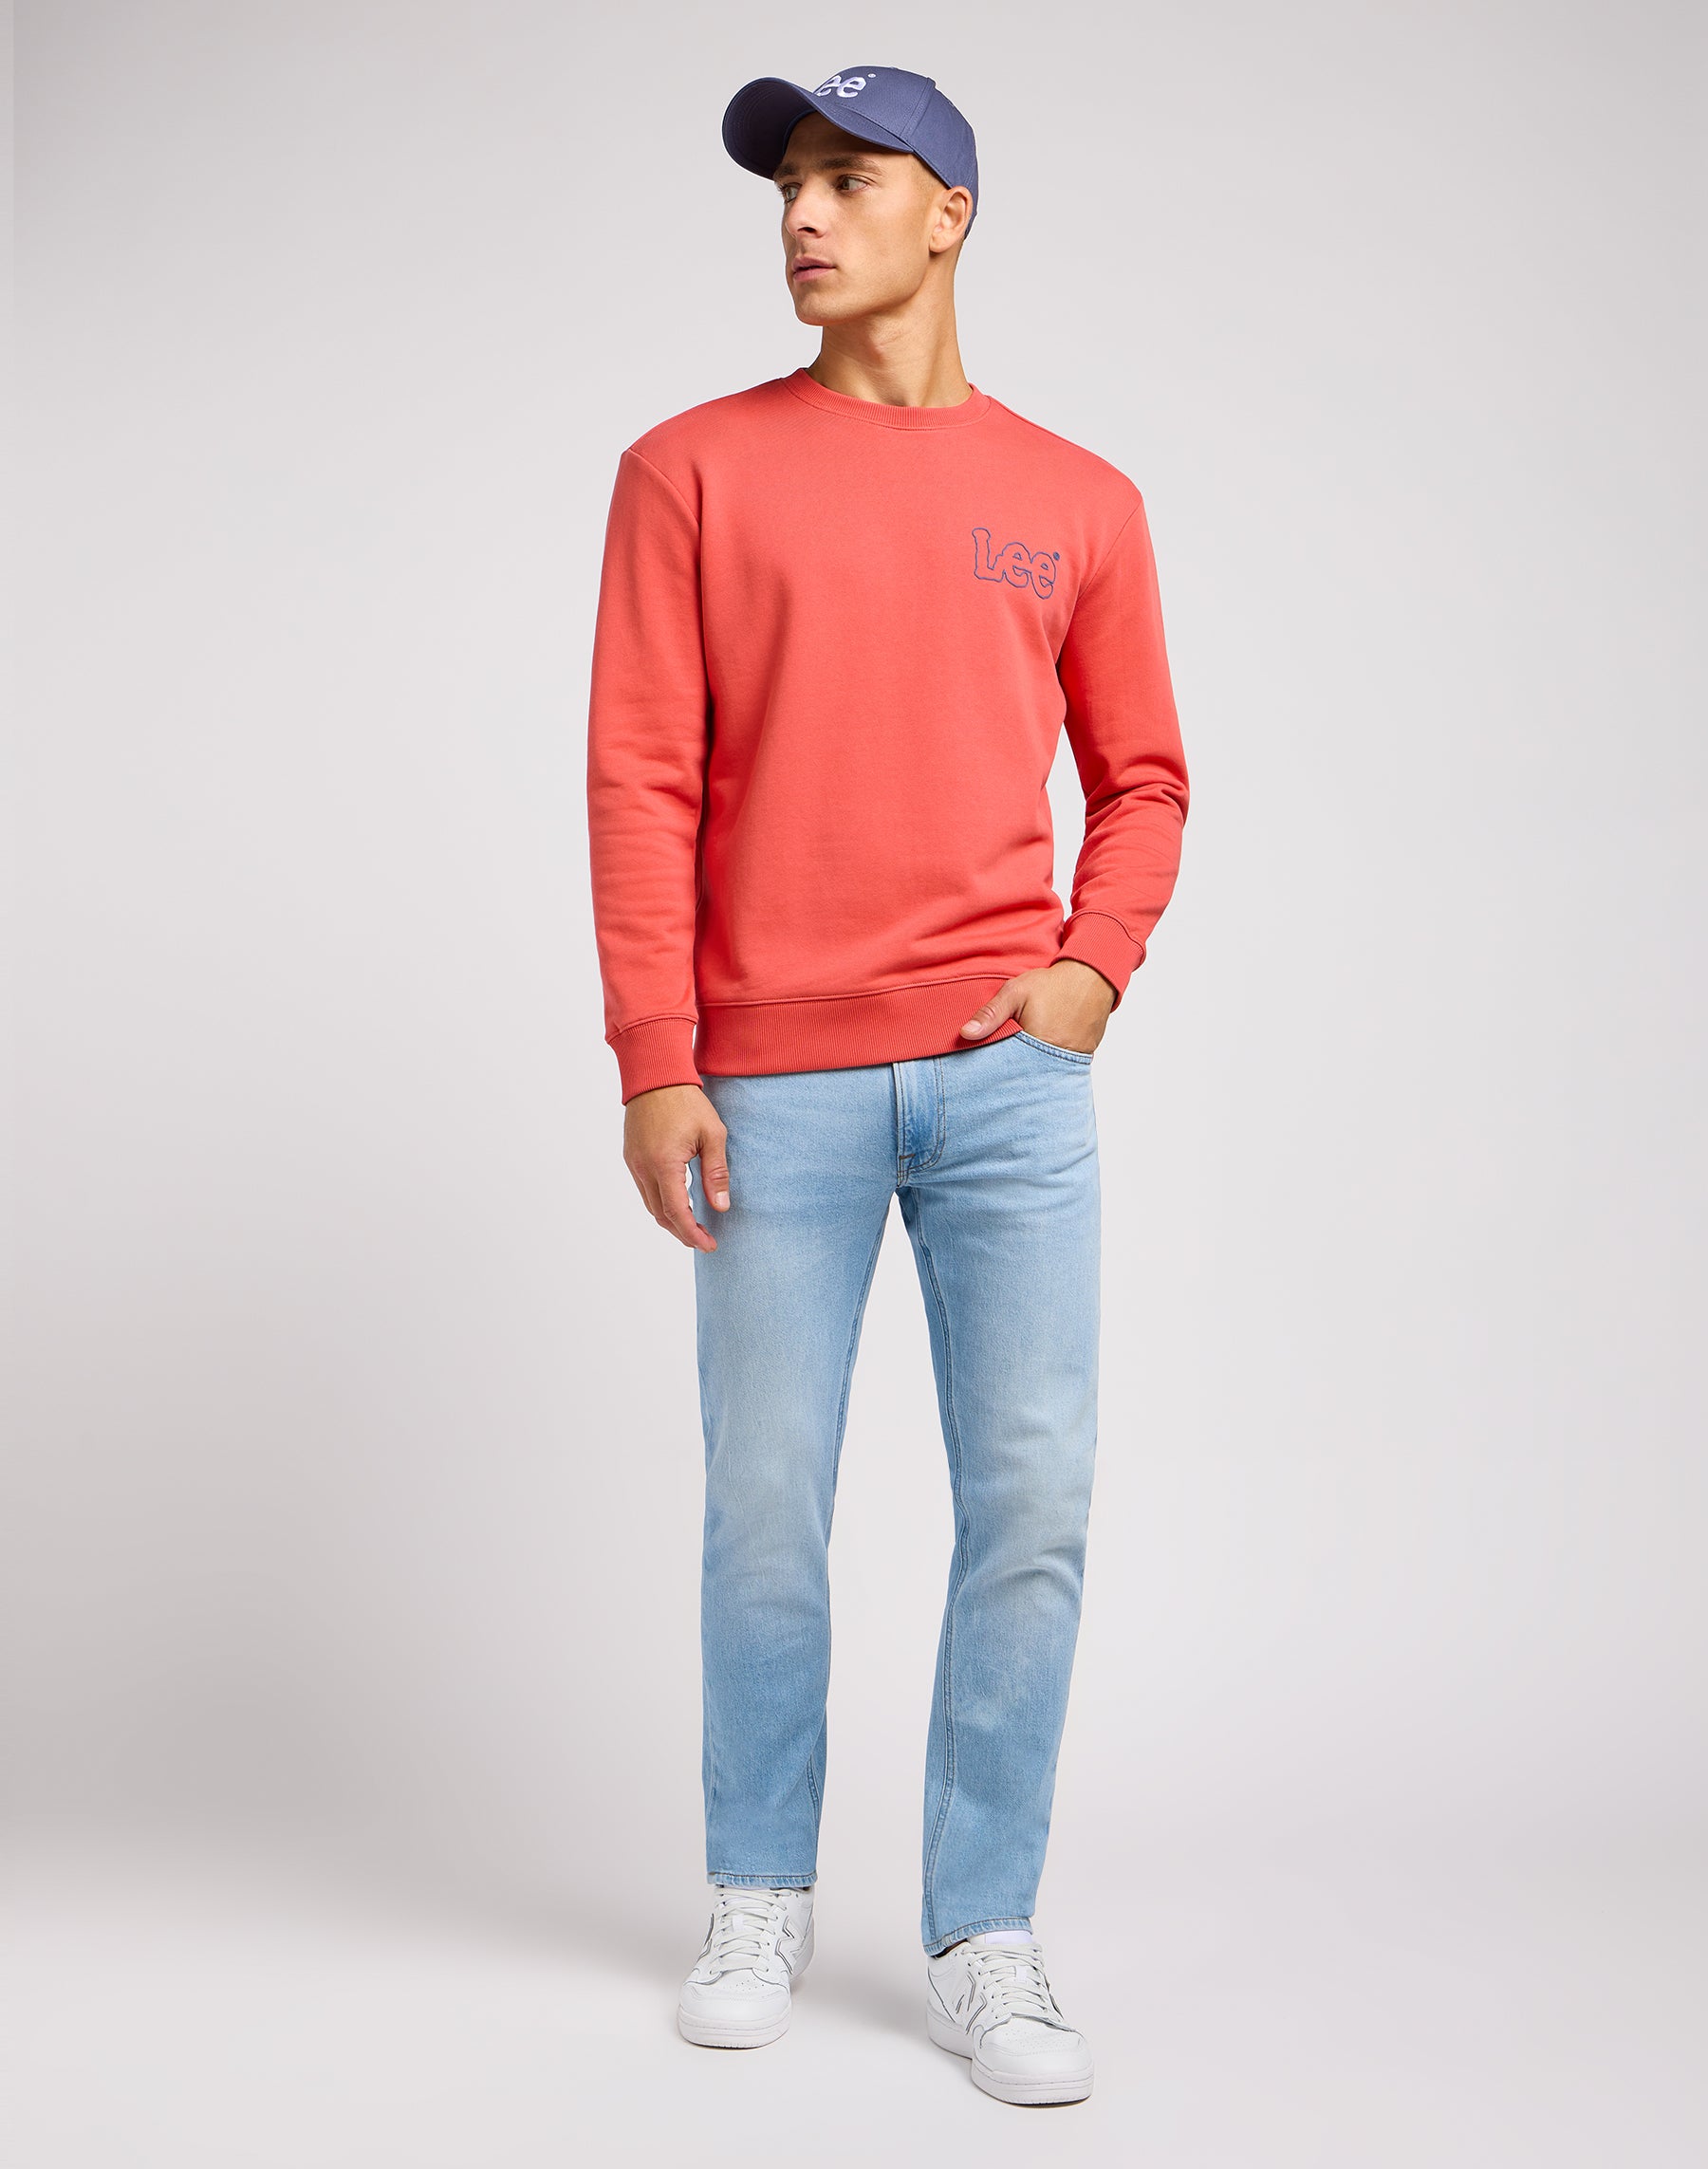 Wobbly Lee Sweater in Poppy Sweatshirts Lee   